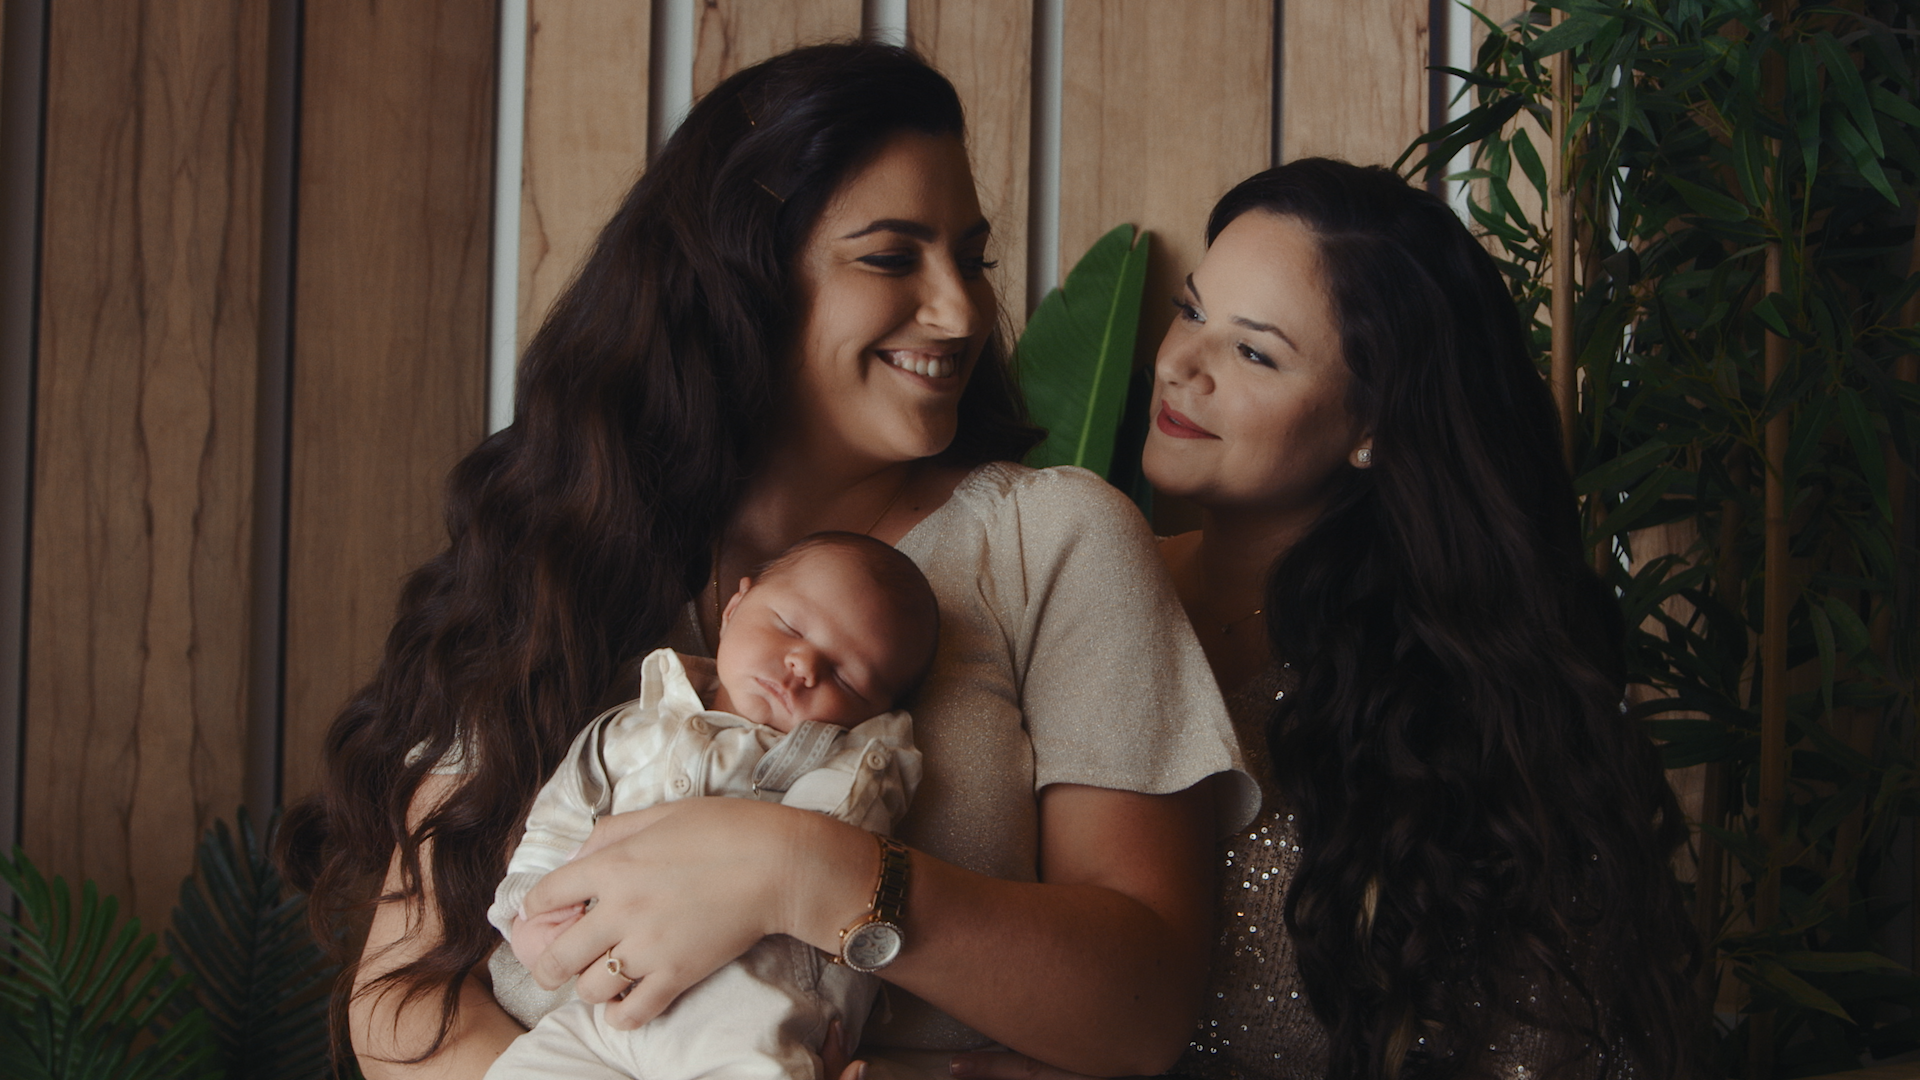 שתי נשים מחזיקות תינוק ומחייכות